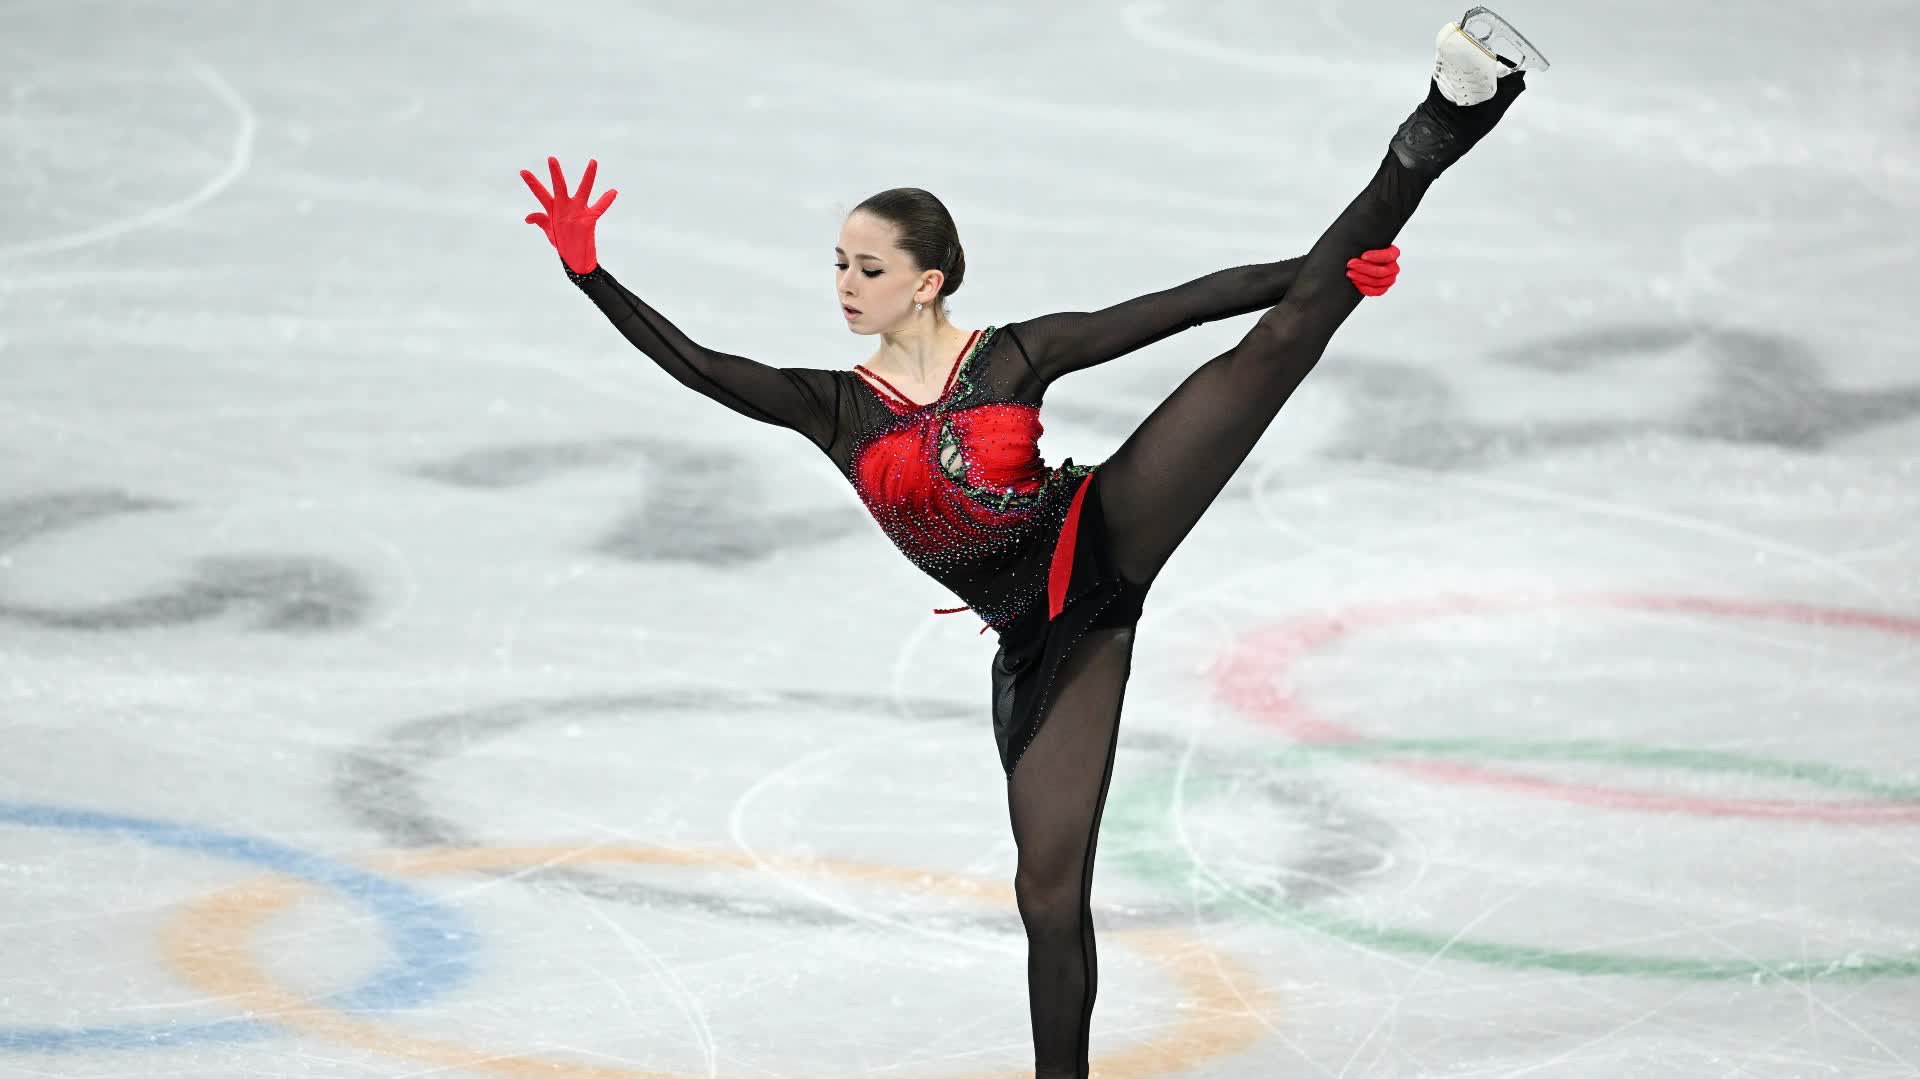 俄羅斯花樣滑冰運動員瓦利耶娃被俄國家隊除名